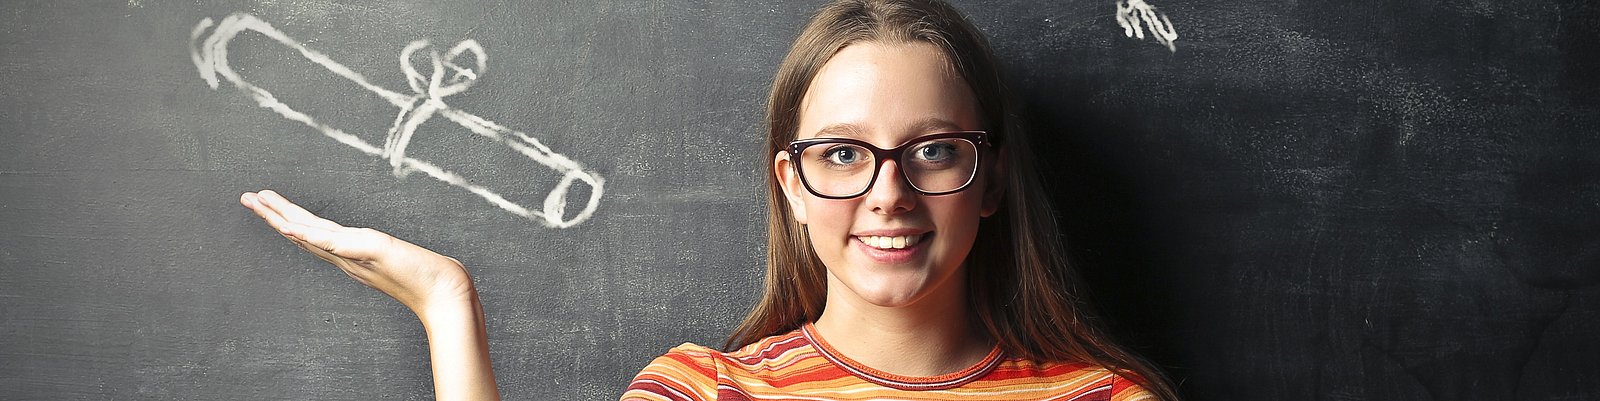 Junge Frau vor einer Schiefertafel mit angezeichneter Diplomrolle über der Hand und Graduiertenhut über dem Kopf AdobeStock_96461795.jpeg